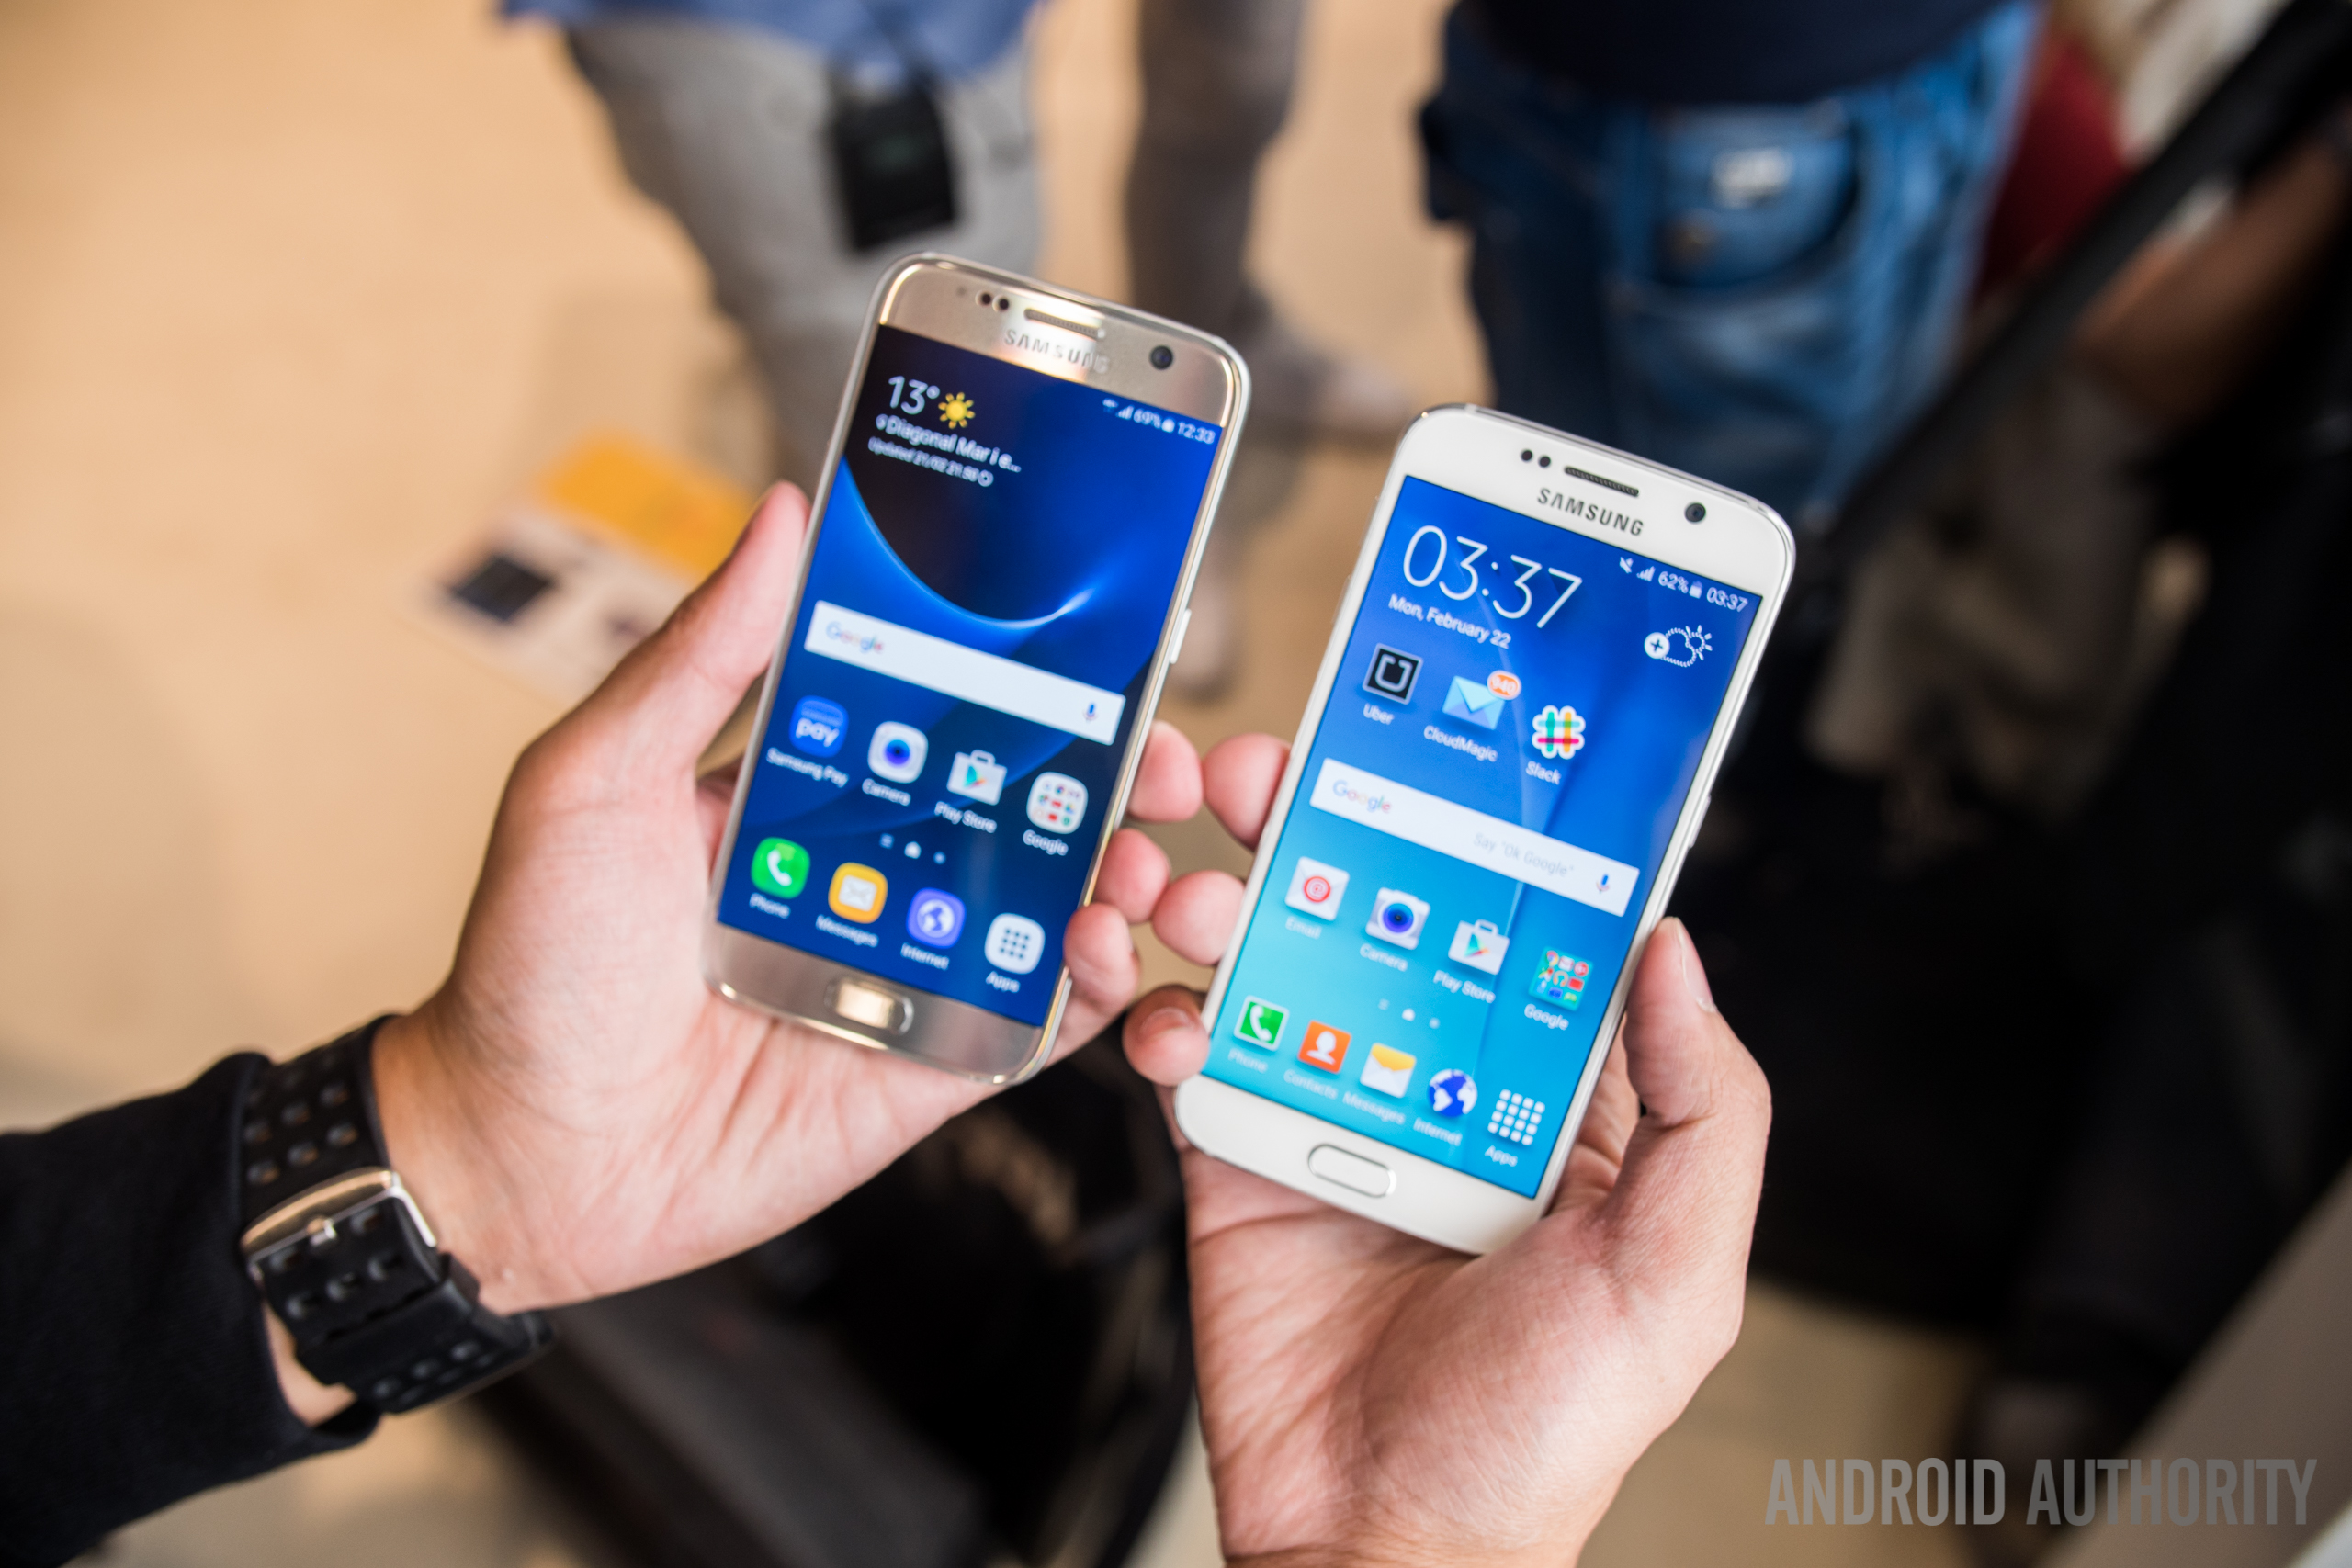 Familielid Sociale wetenschappen Niet meer geldig Samsung Galaxy S7 vs Galaxy S6 hands on - Android Authority